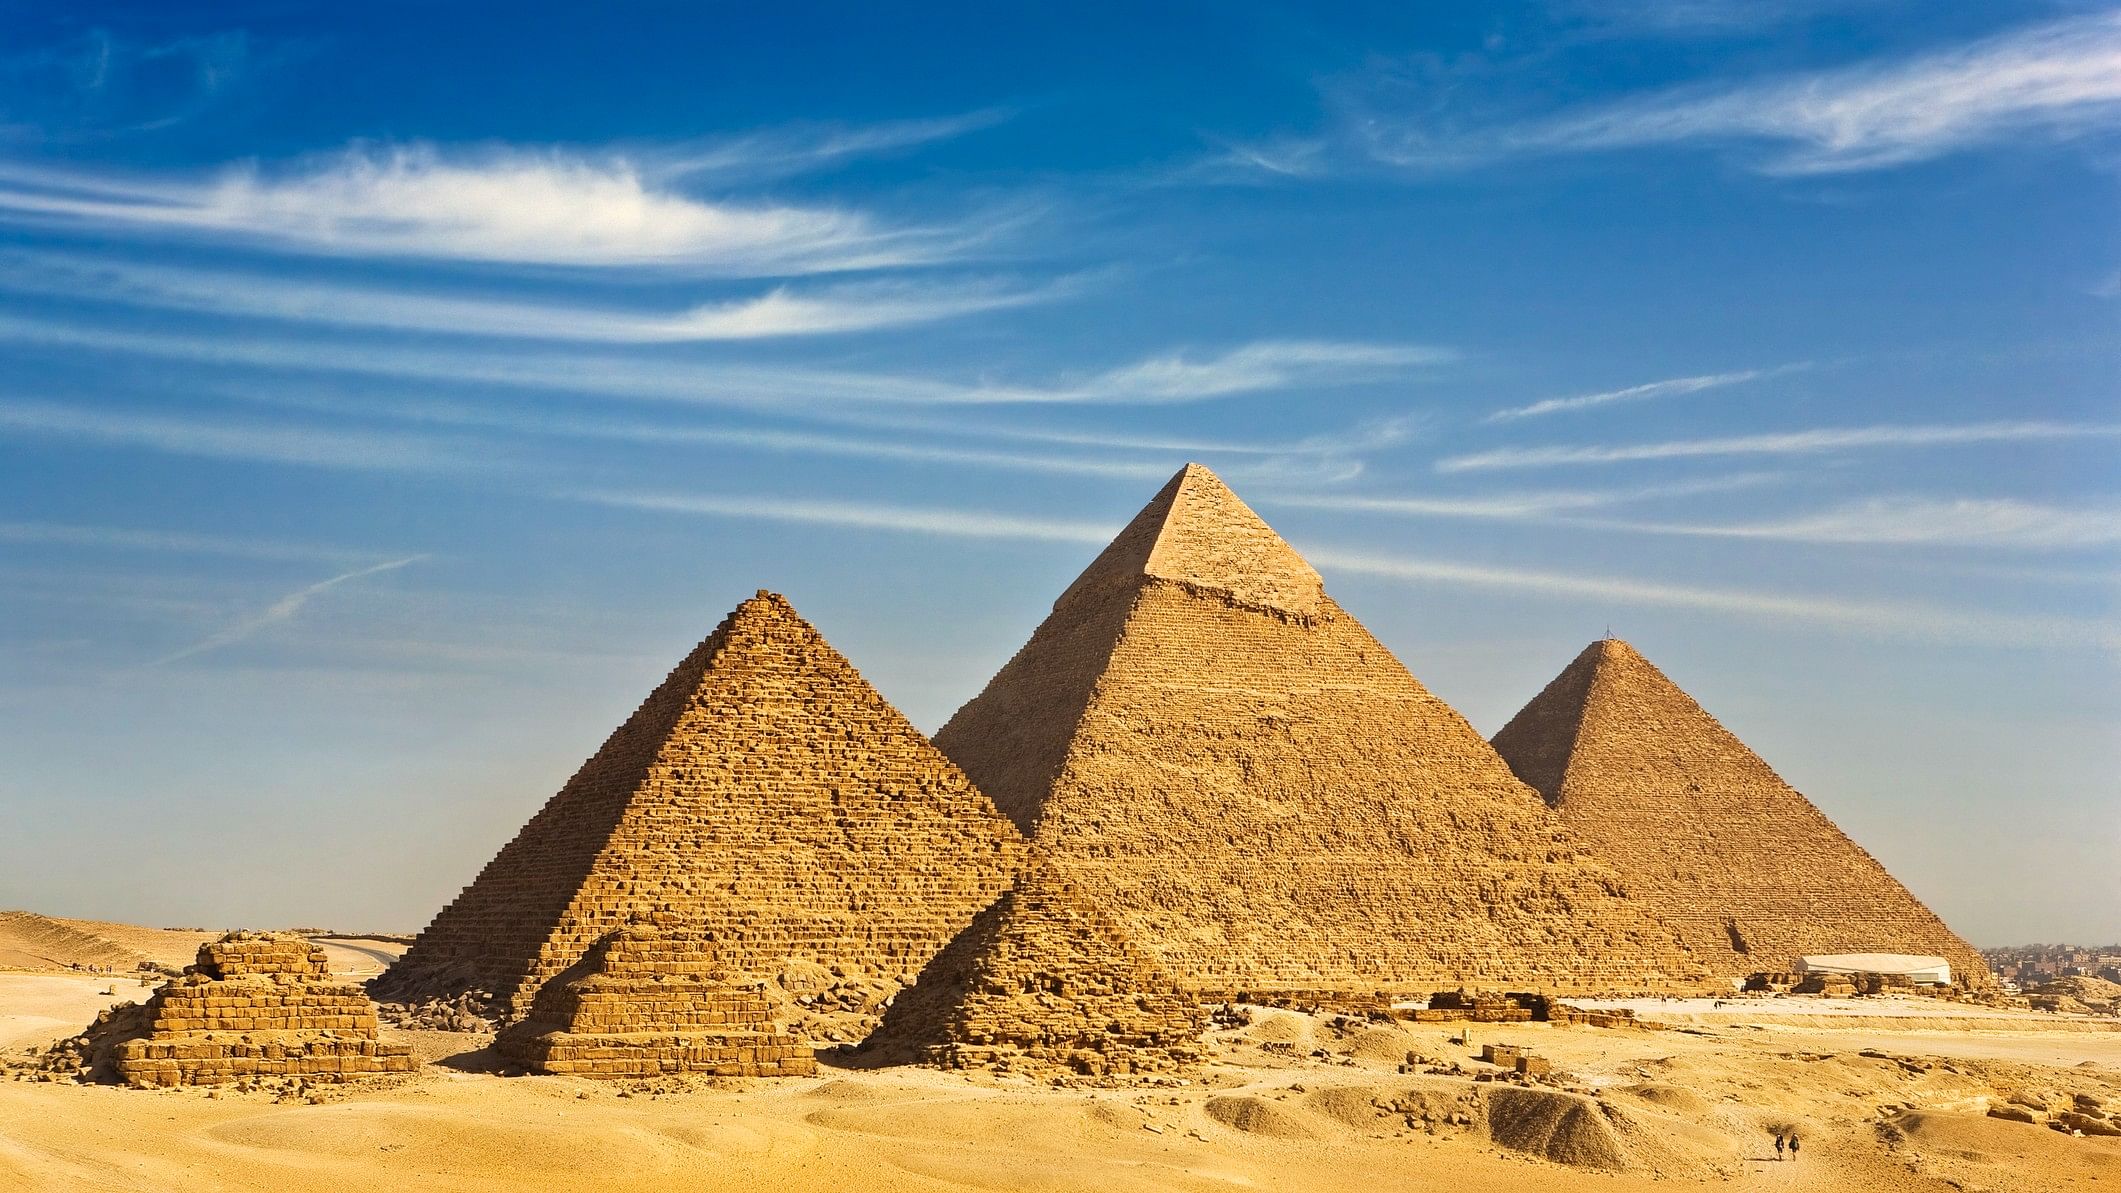 <div class="paragraphs"><p>Pyramids of Giza</p></div>